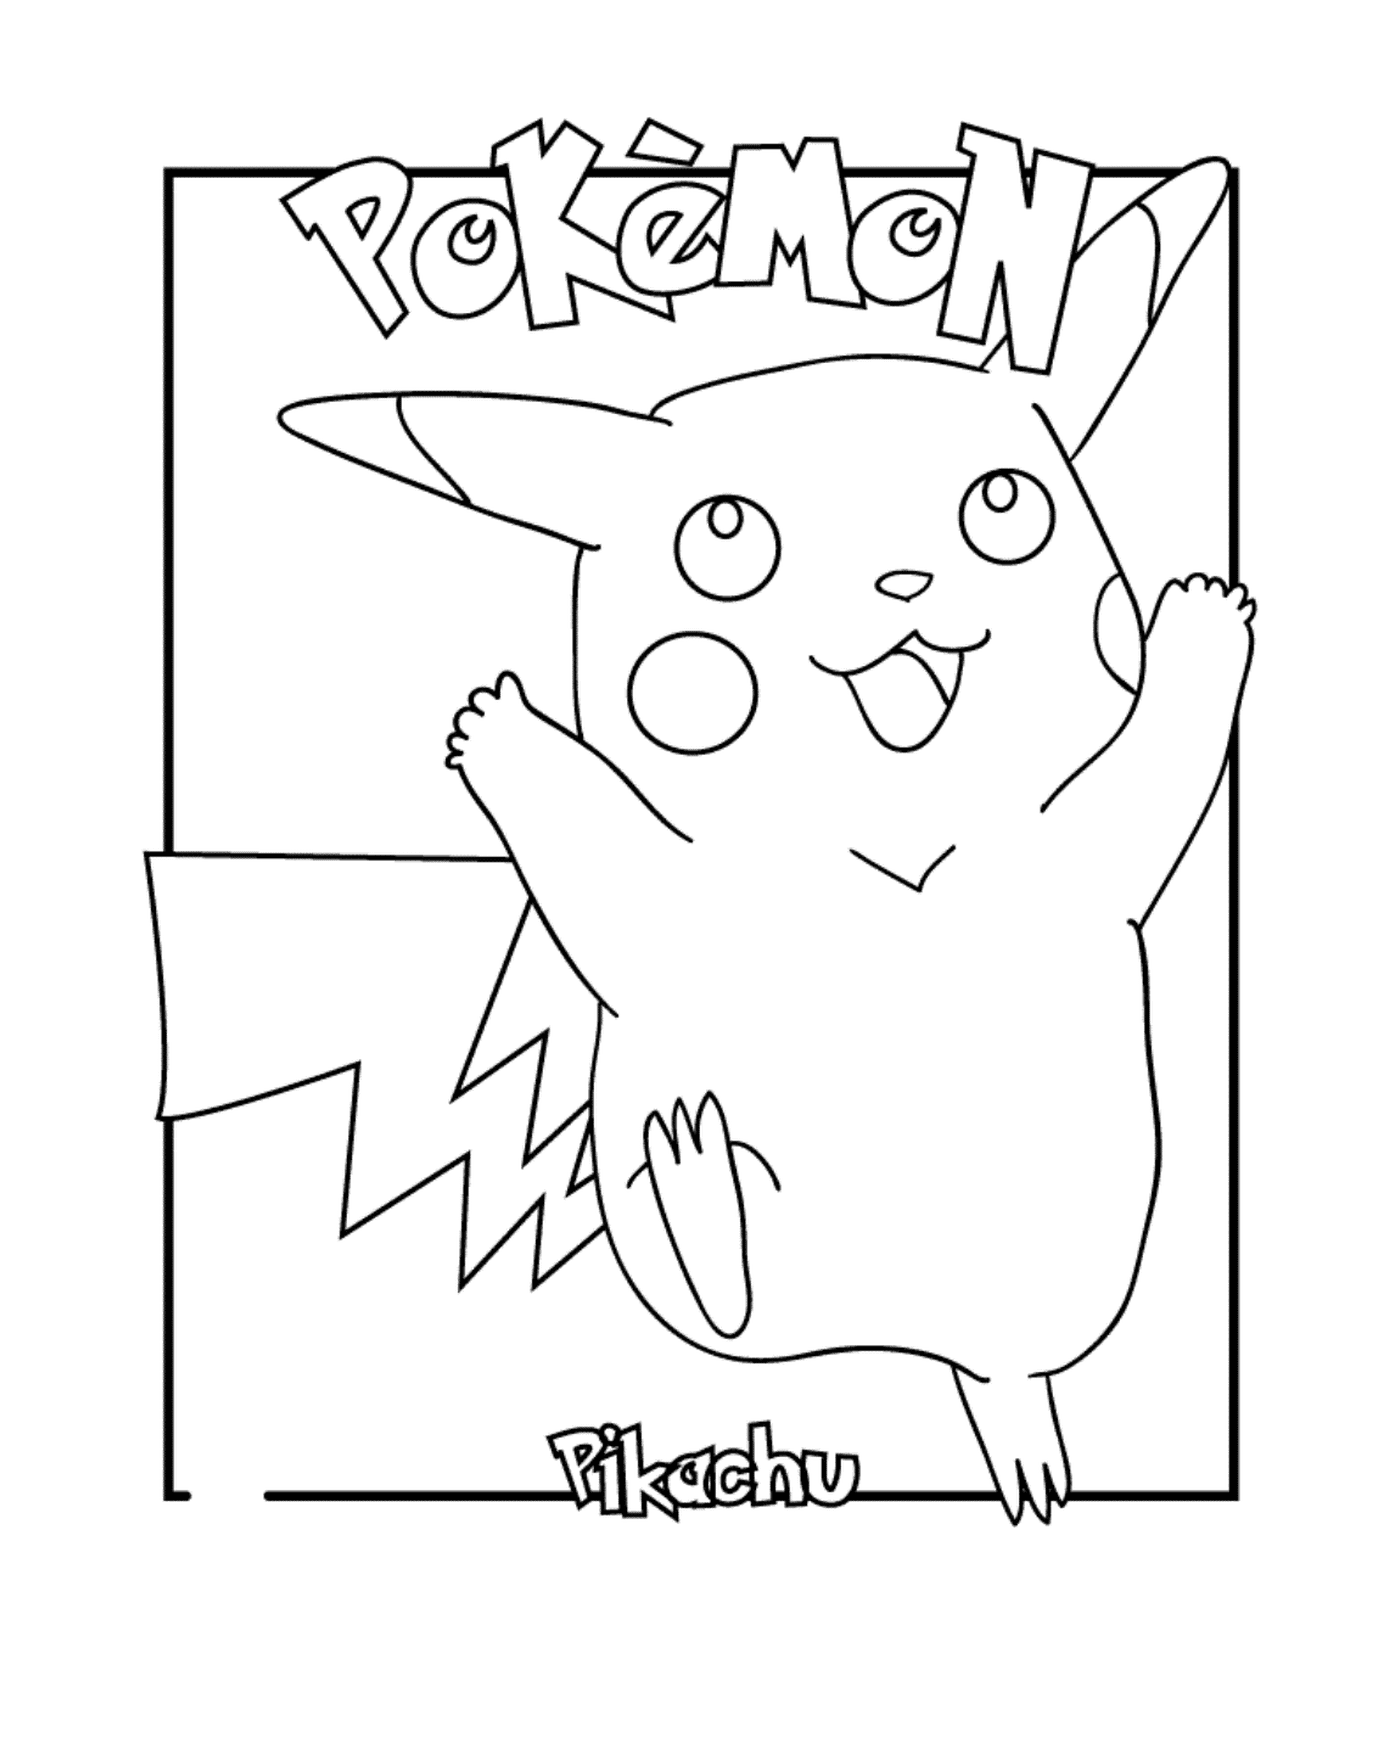  Pikachu, der geliebte Pokémon 